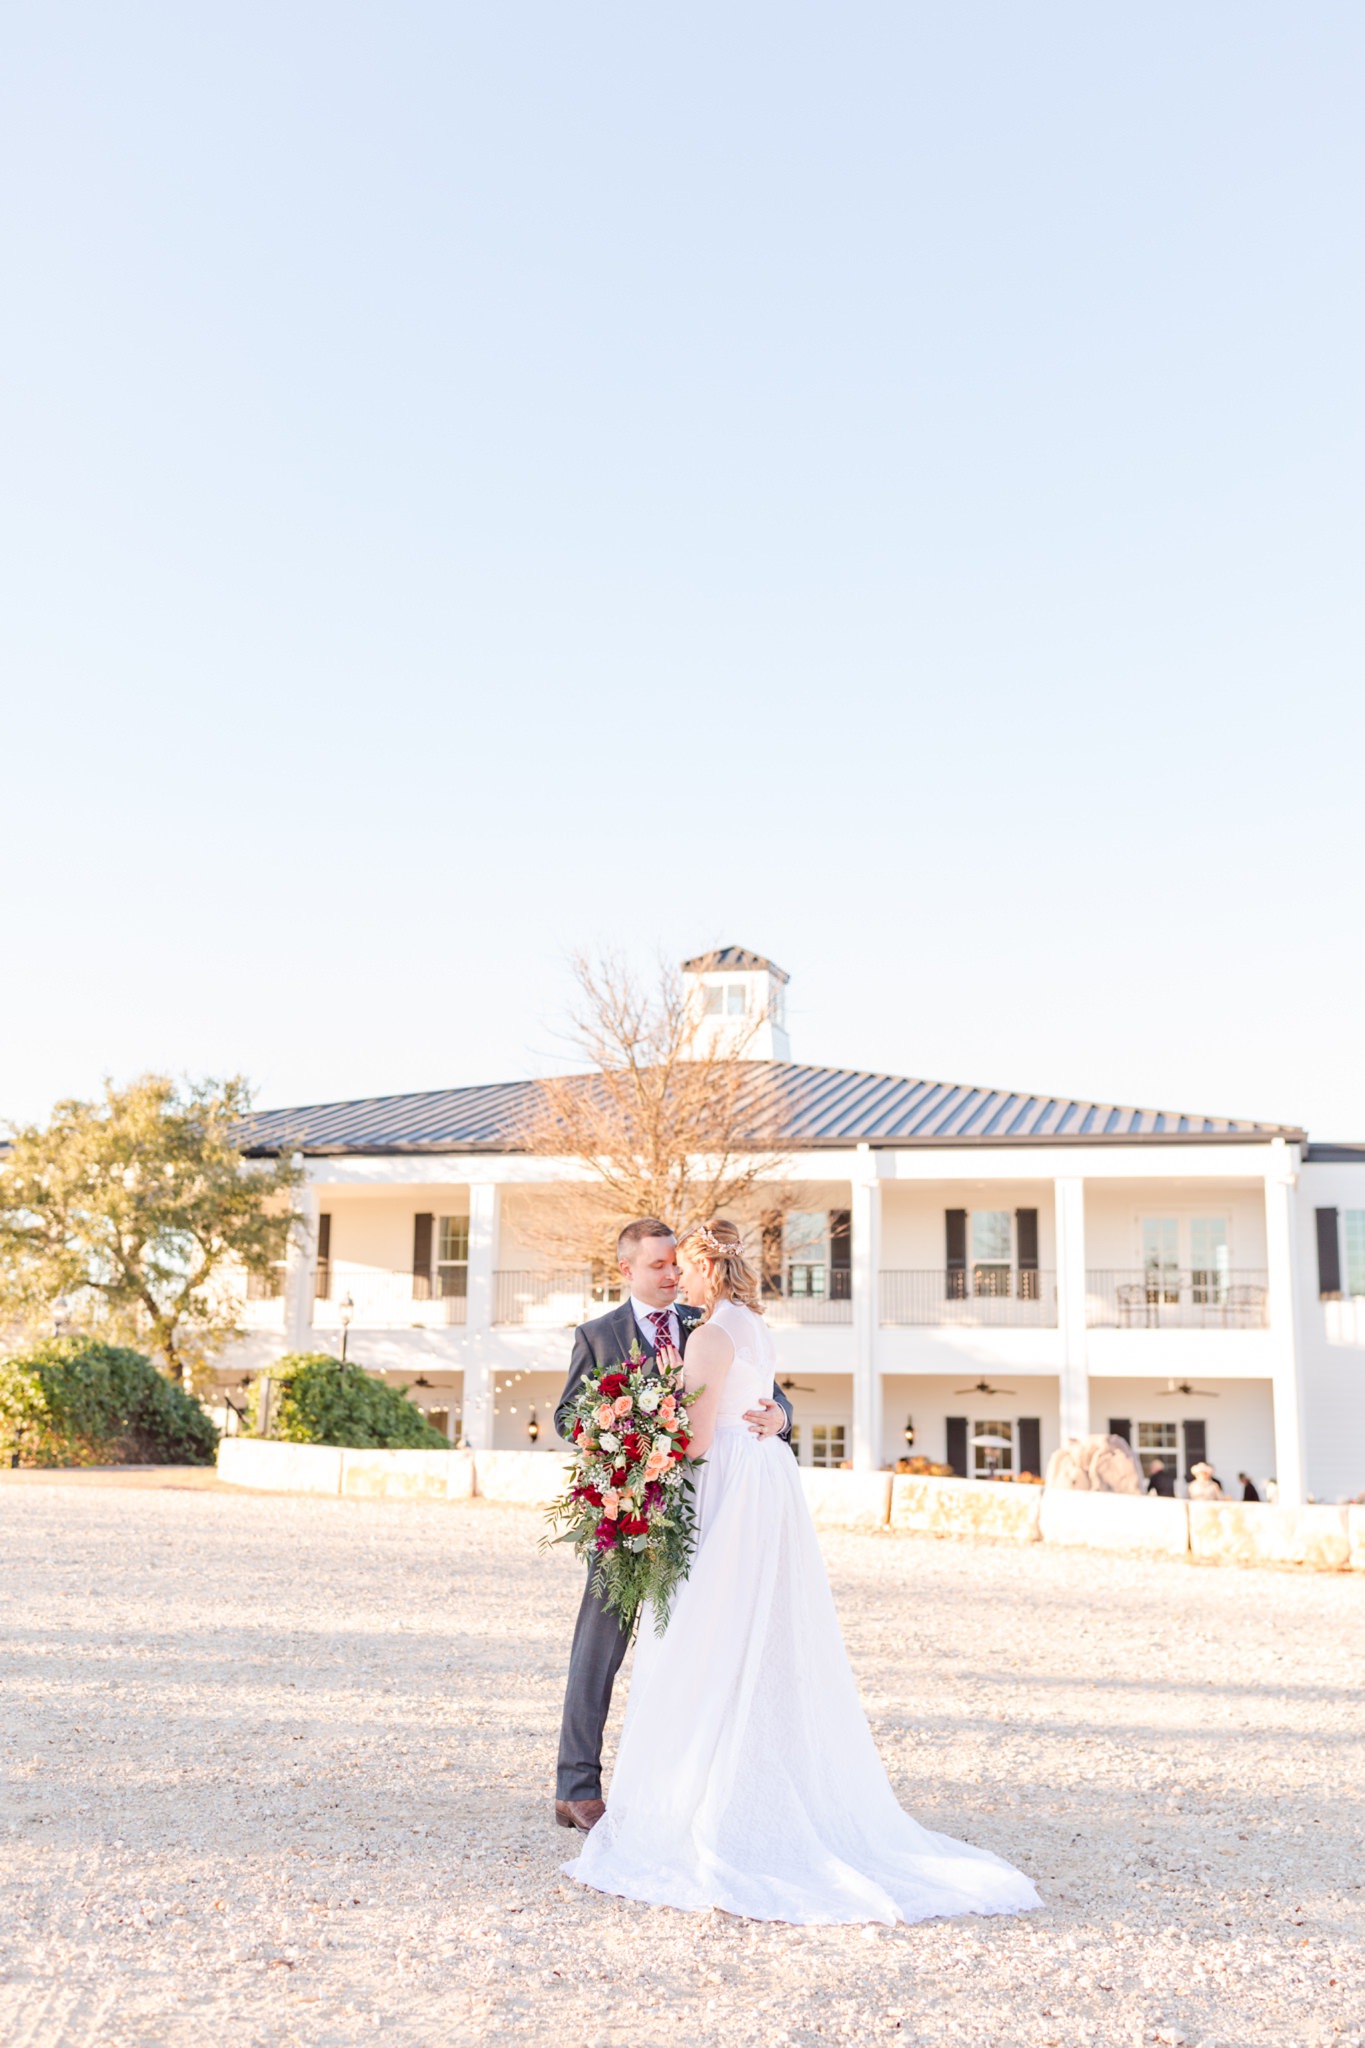 A Burgundy, Gold and Peach Wedding at Kendall Point in Boerne, TX by Dawn Elizabeth Studios, Boerne Wedding Photographer